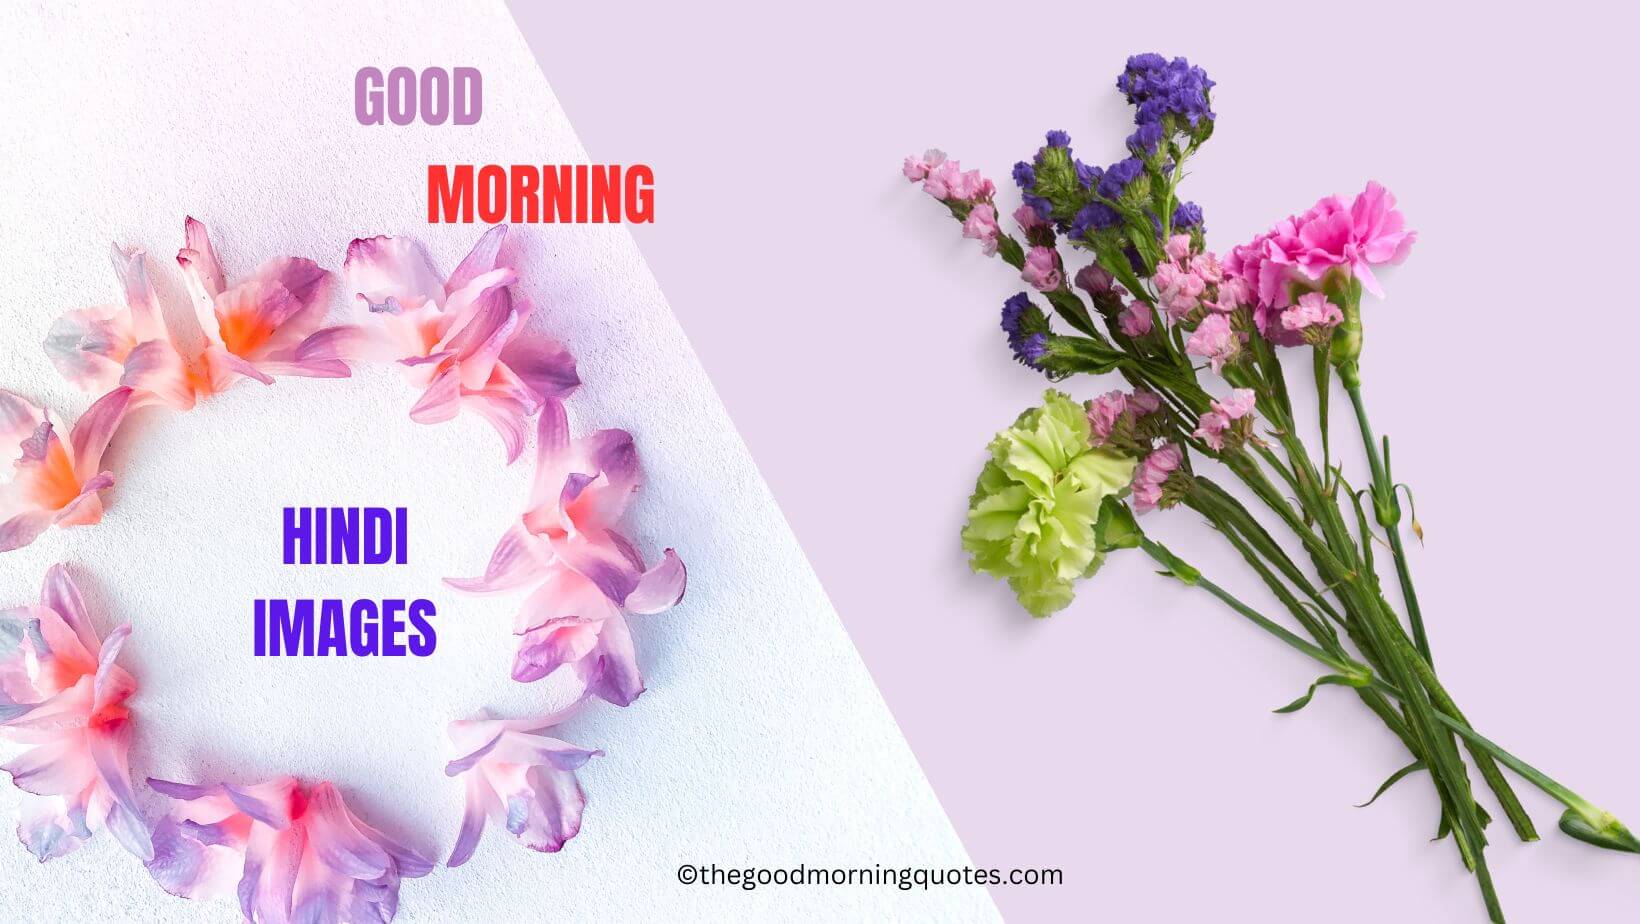 Good morning Hindi quotes images